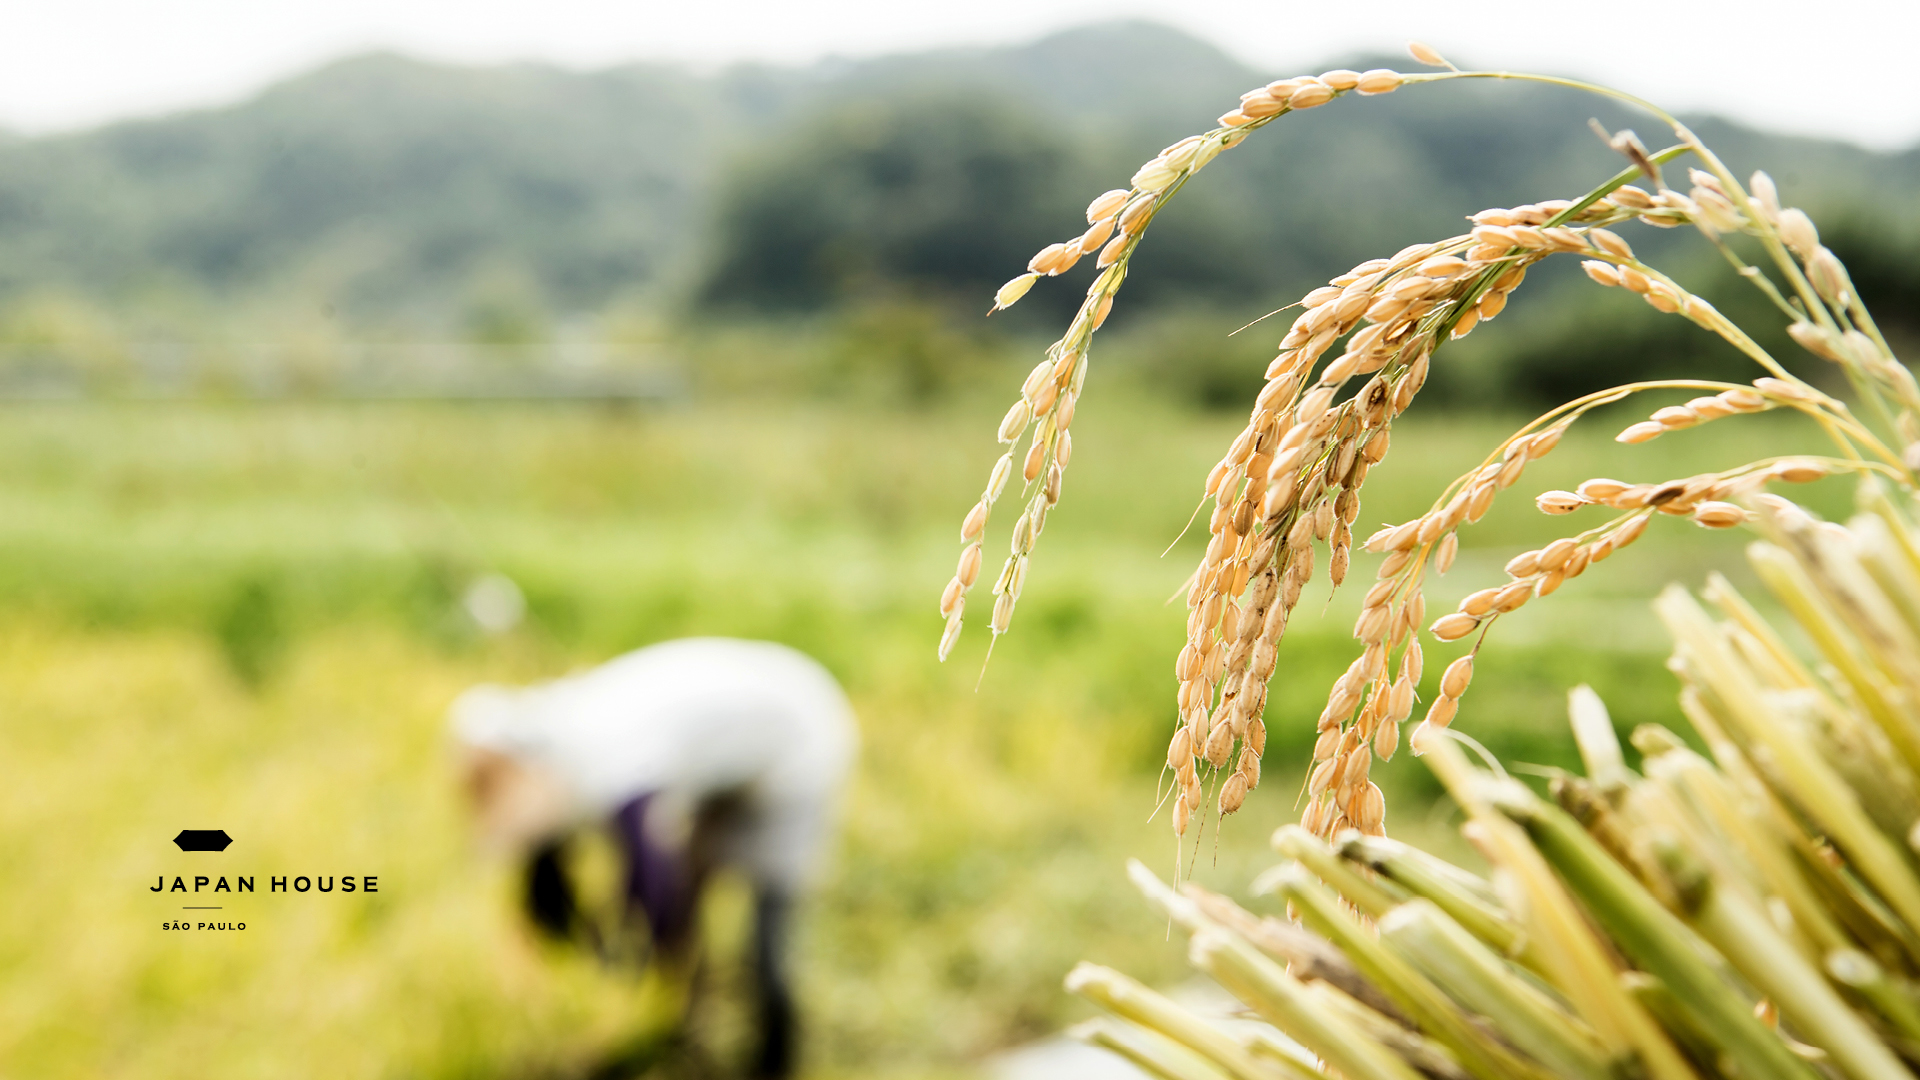 Plantação de arroz com foco nas folhas do lado direito, com a silhueta de uma pessoa agachada na plantação ao lado esquerdo. 